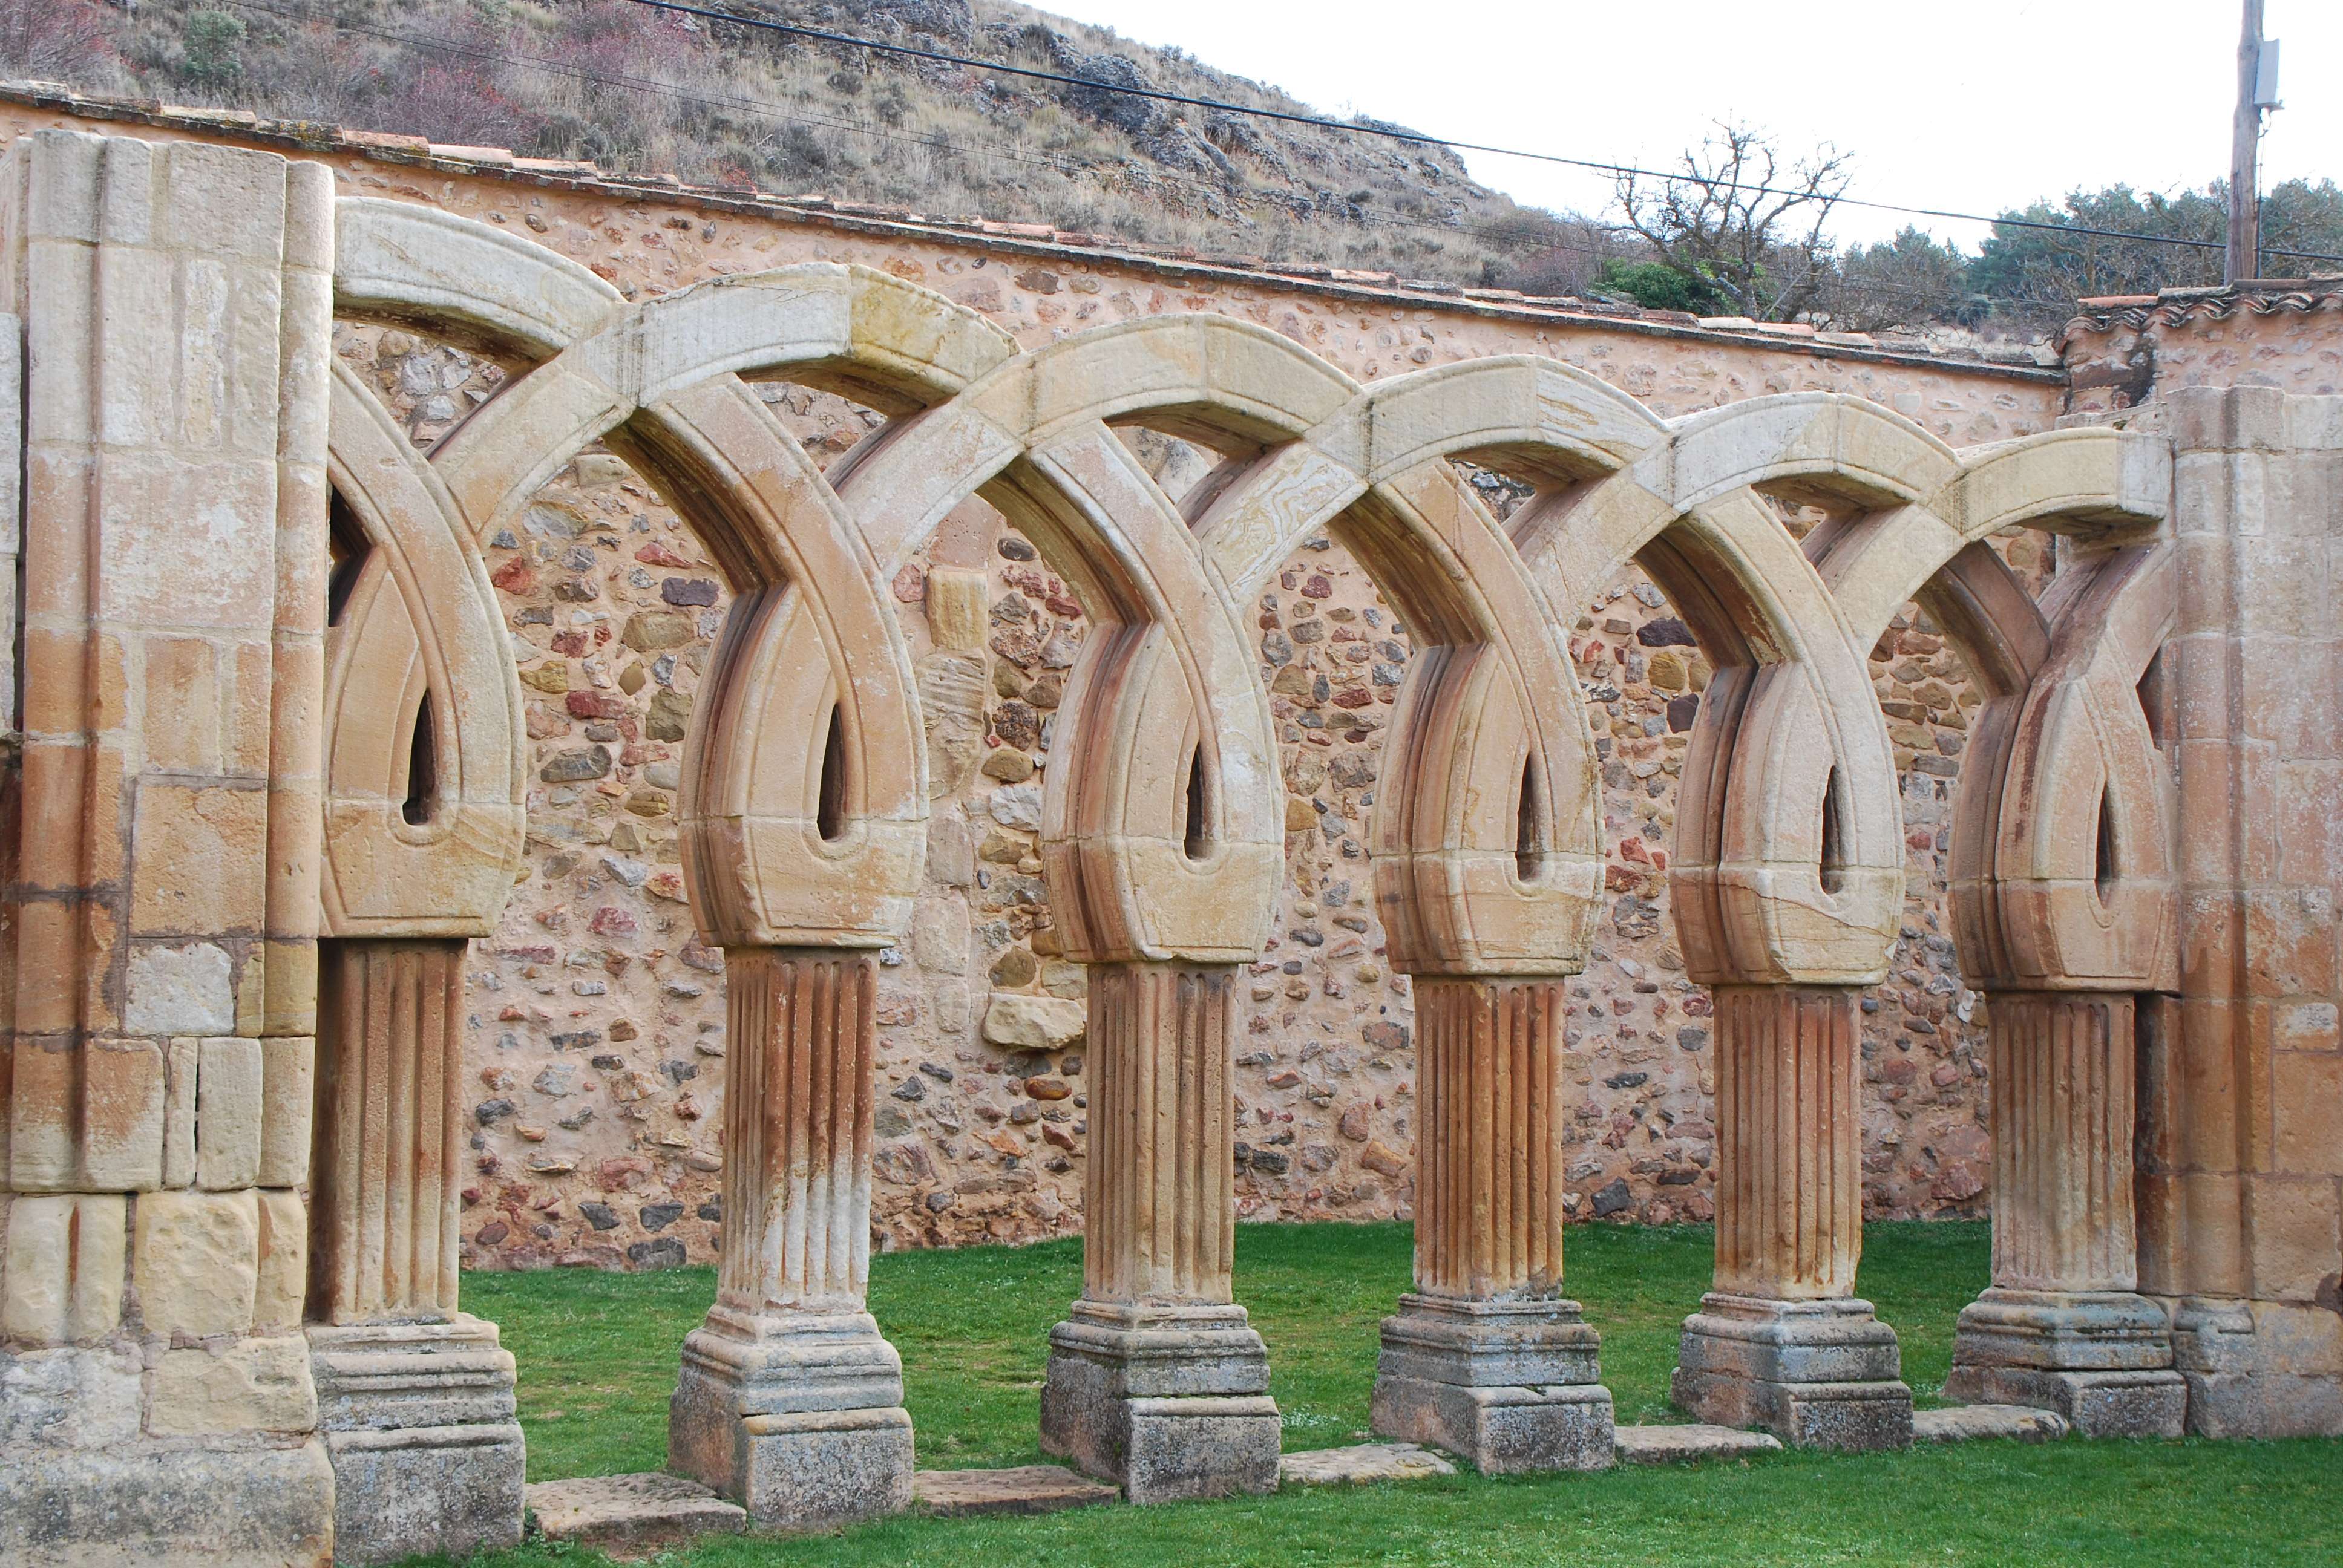 Monasterio de San Juan de Duero. Un enigma - Blogs of Spain - Monasterio de San Juan de Duero (9)